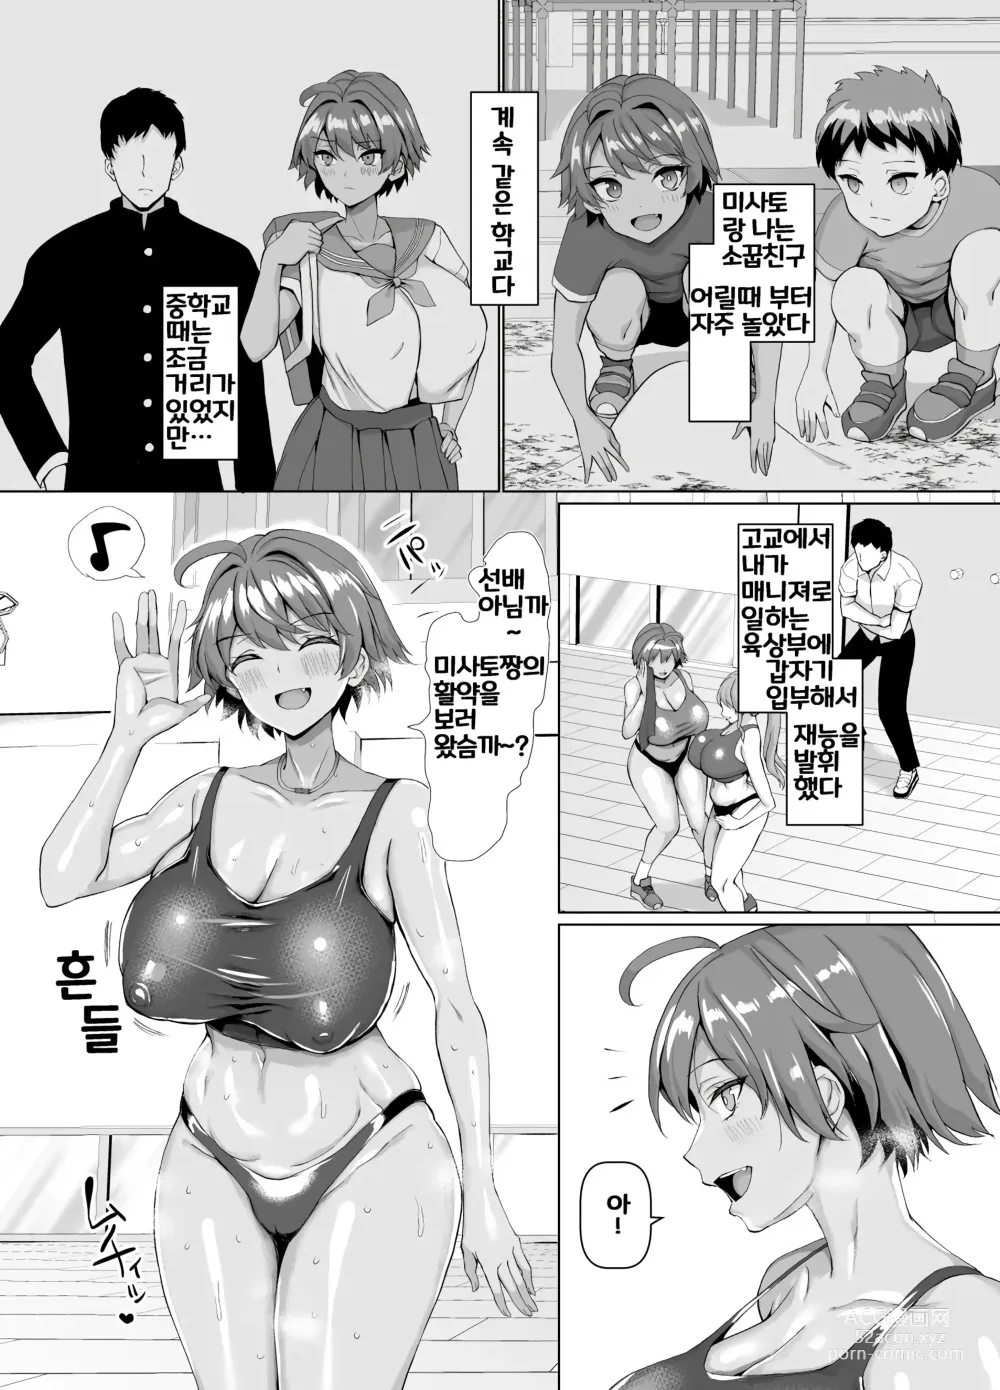 Page 3 of doujinshi Ore no koto daisukina kouhai ga riku-bu no kochi ni ya rare teta kudanㅣ나를 좋아하는 후배가 육상부 코치에게 당해버린 건